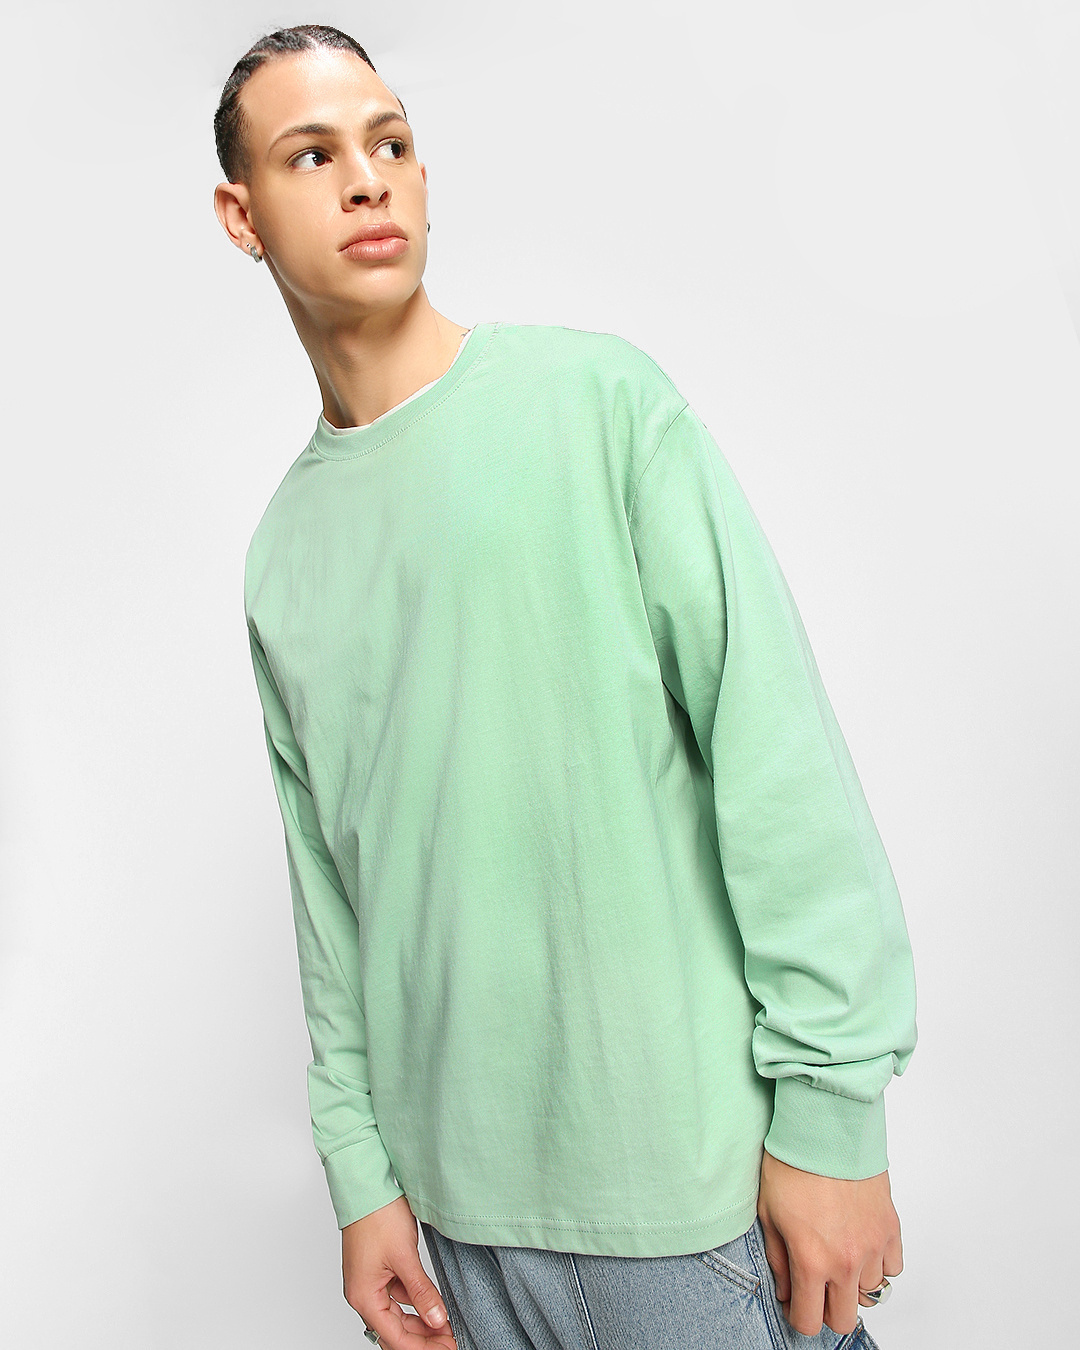 Buy Men's Green Oversized T-shirt Online at Bewakoof